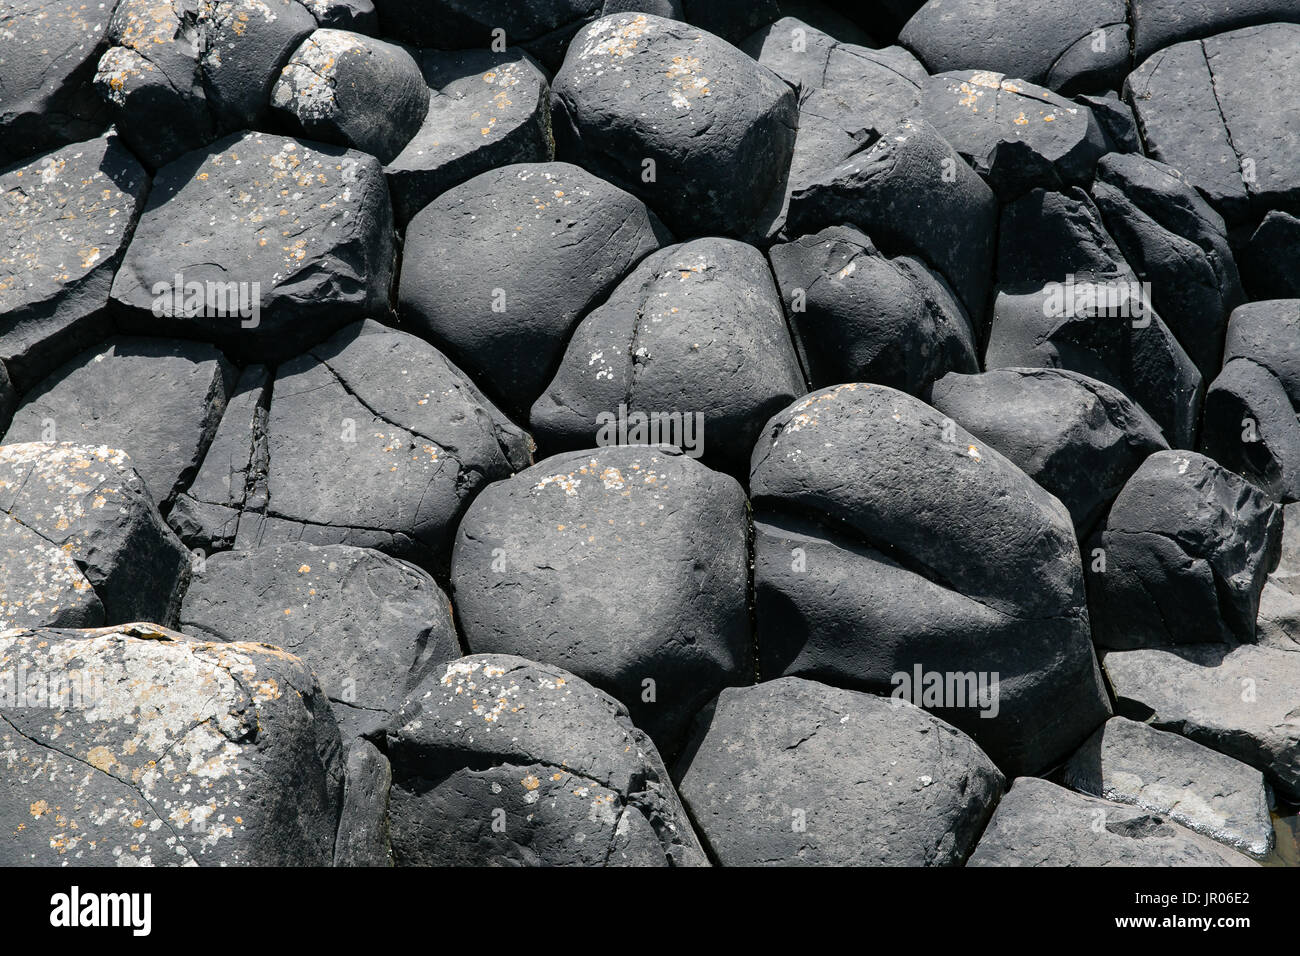 Lit de roches volcaniques basaltiques hexagonales colonnes à la Giant's Causeway Coast - Le Site du patrimoine mondial naturel de l'Irlande du Nord d'Antrim Bushmills Banque D'Images